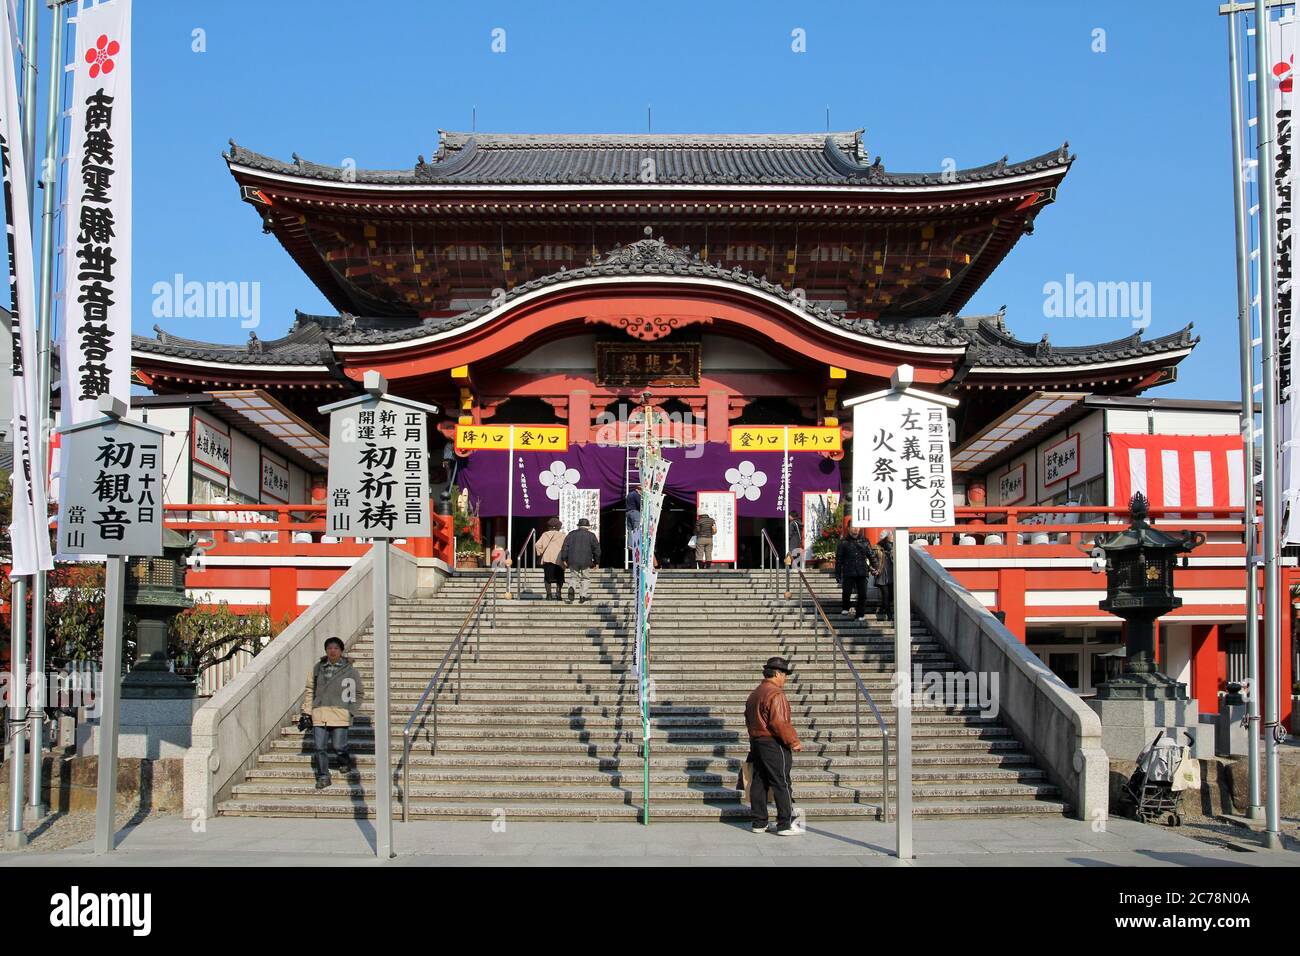 NAGOYA, GIAPPONE - DICEMBRE 29: Il Tempio di Kanon dell'OSU a Nagoya, Giappone, si prepara per la Celebrazione di Capodanno 2012. OSU Kanon è un tempio budhista (setta di Shingon). Foto Stock